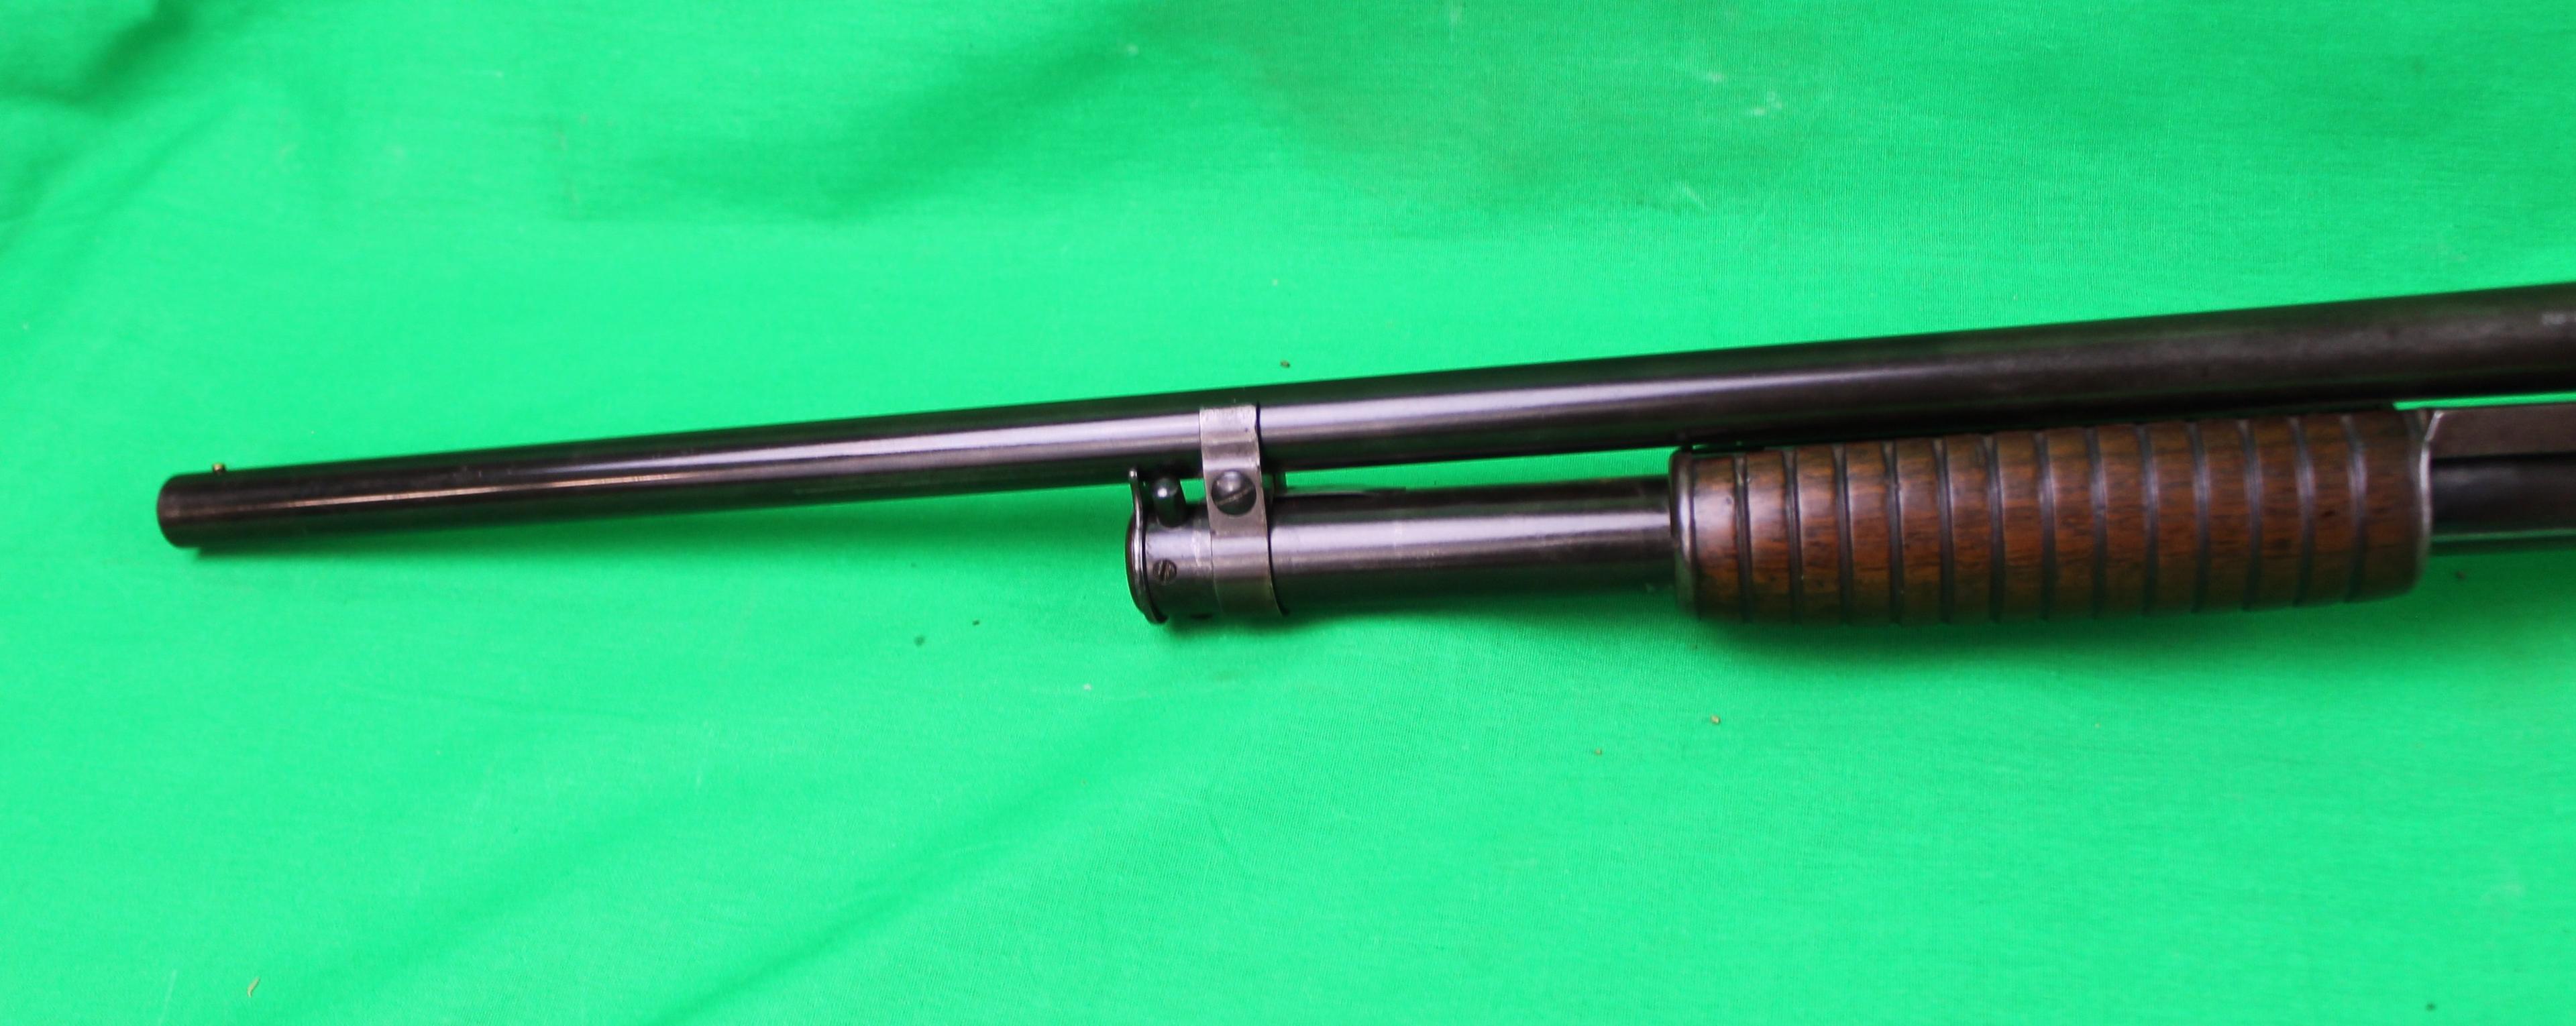 Winchester 1912 20 GA, Full choke, takedown model